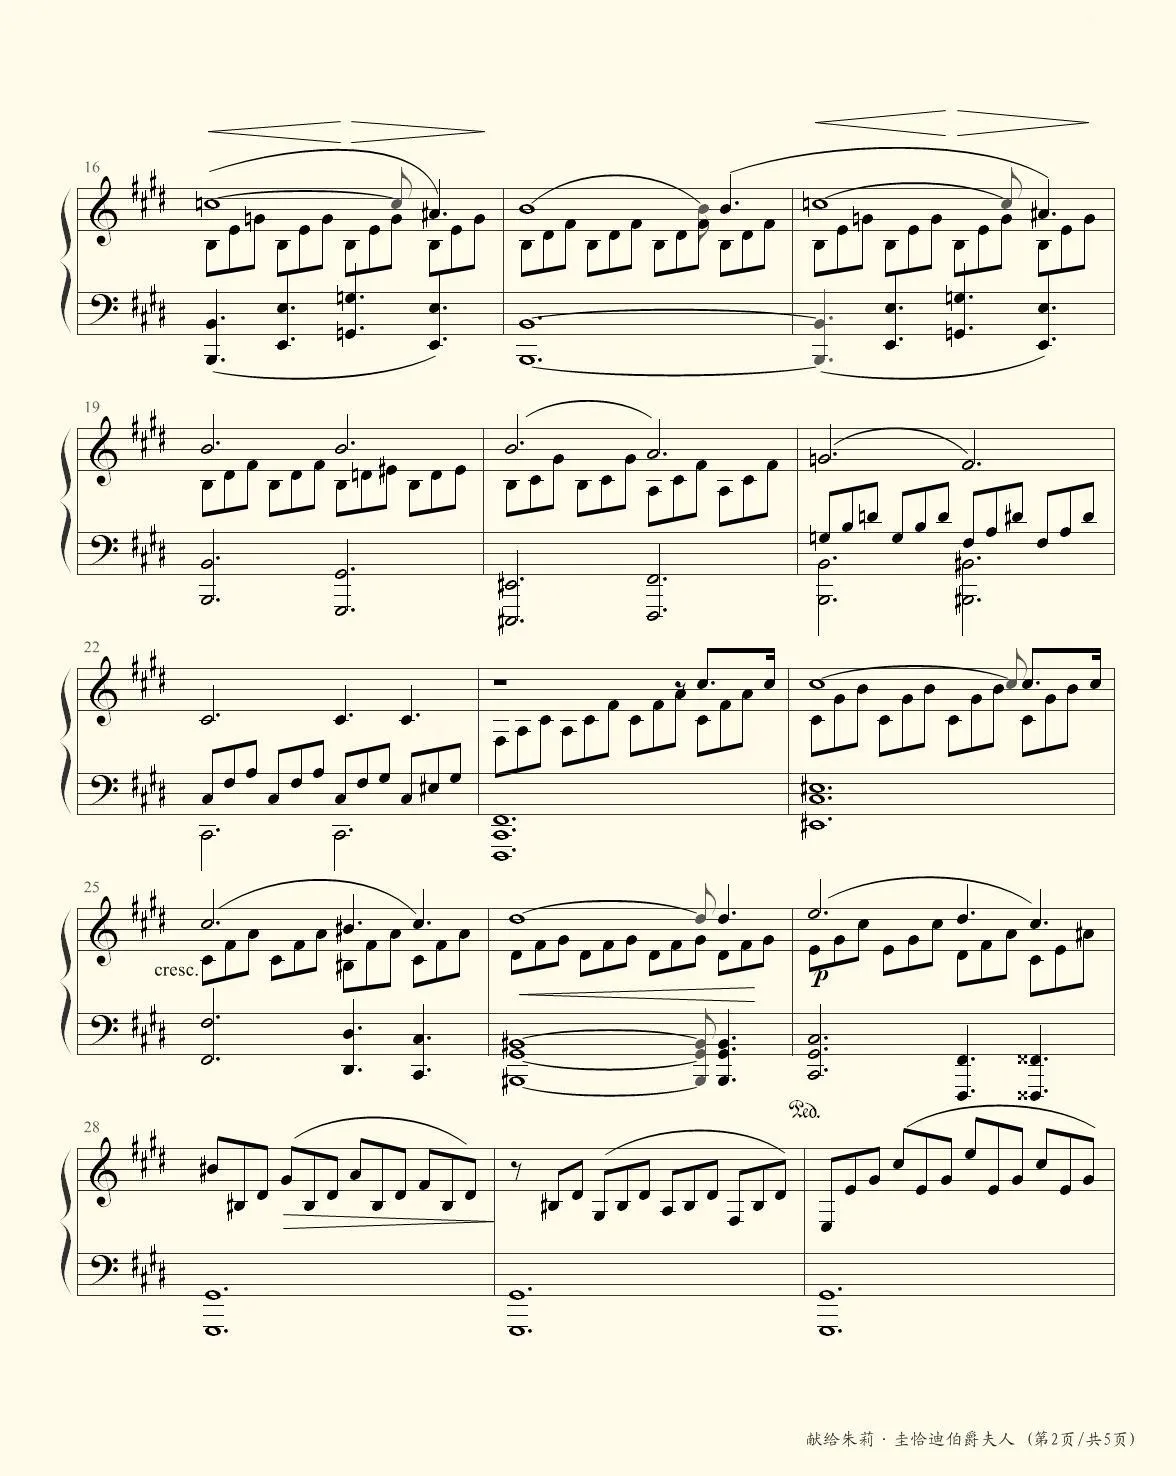 月光奏鸣曲第二乐章-贝多芬双手简谱预览-EOP在线乐谱架